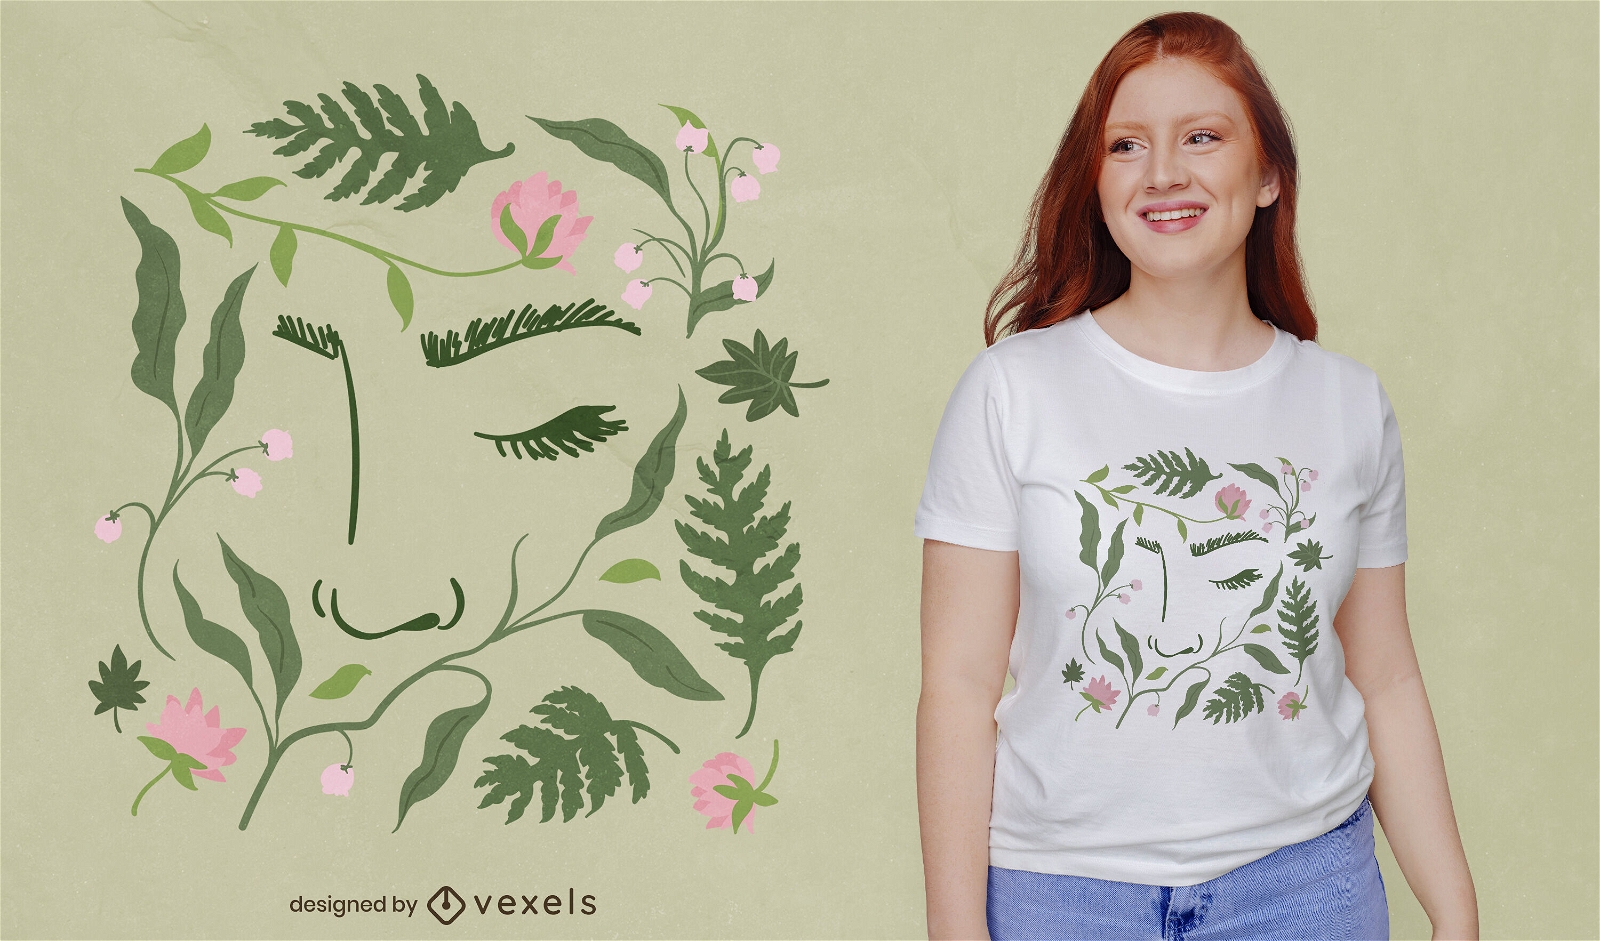 Dise?o de camiseta de cara en plantas naturaleza.